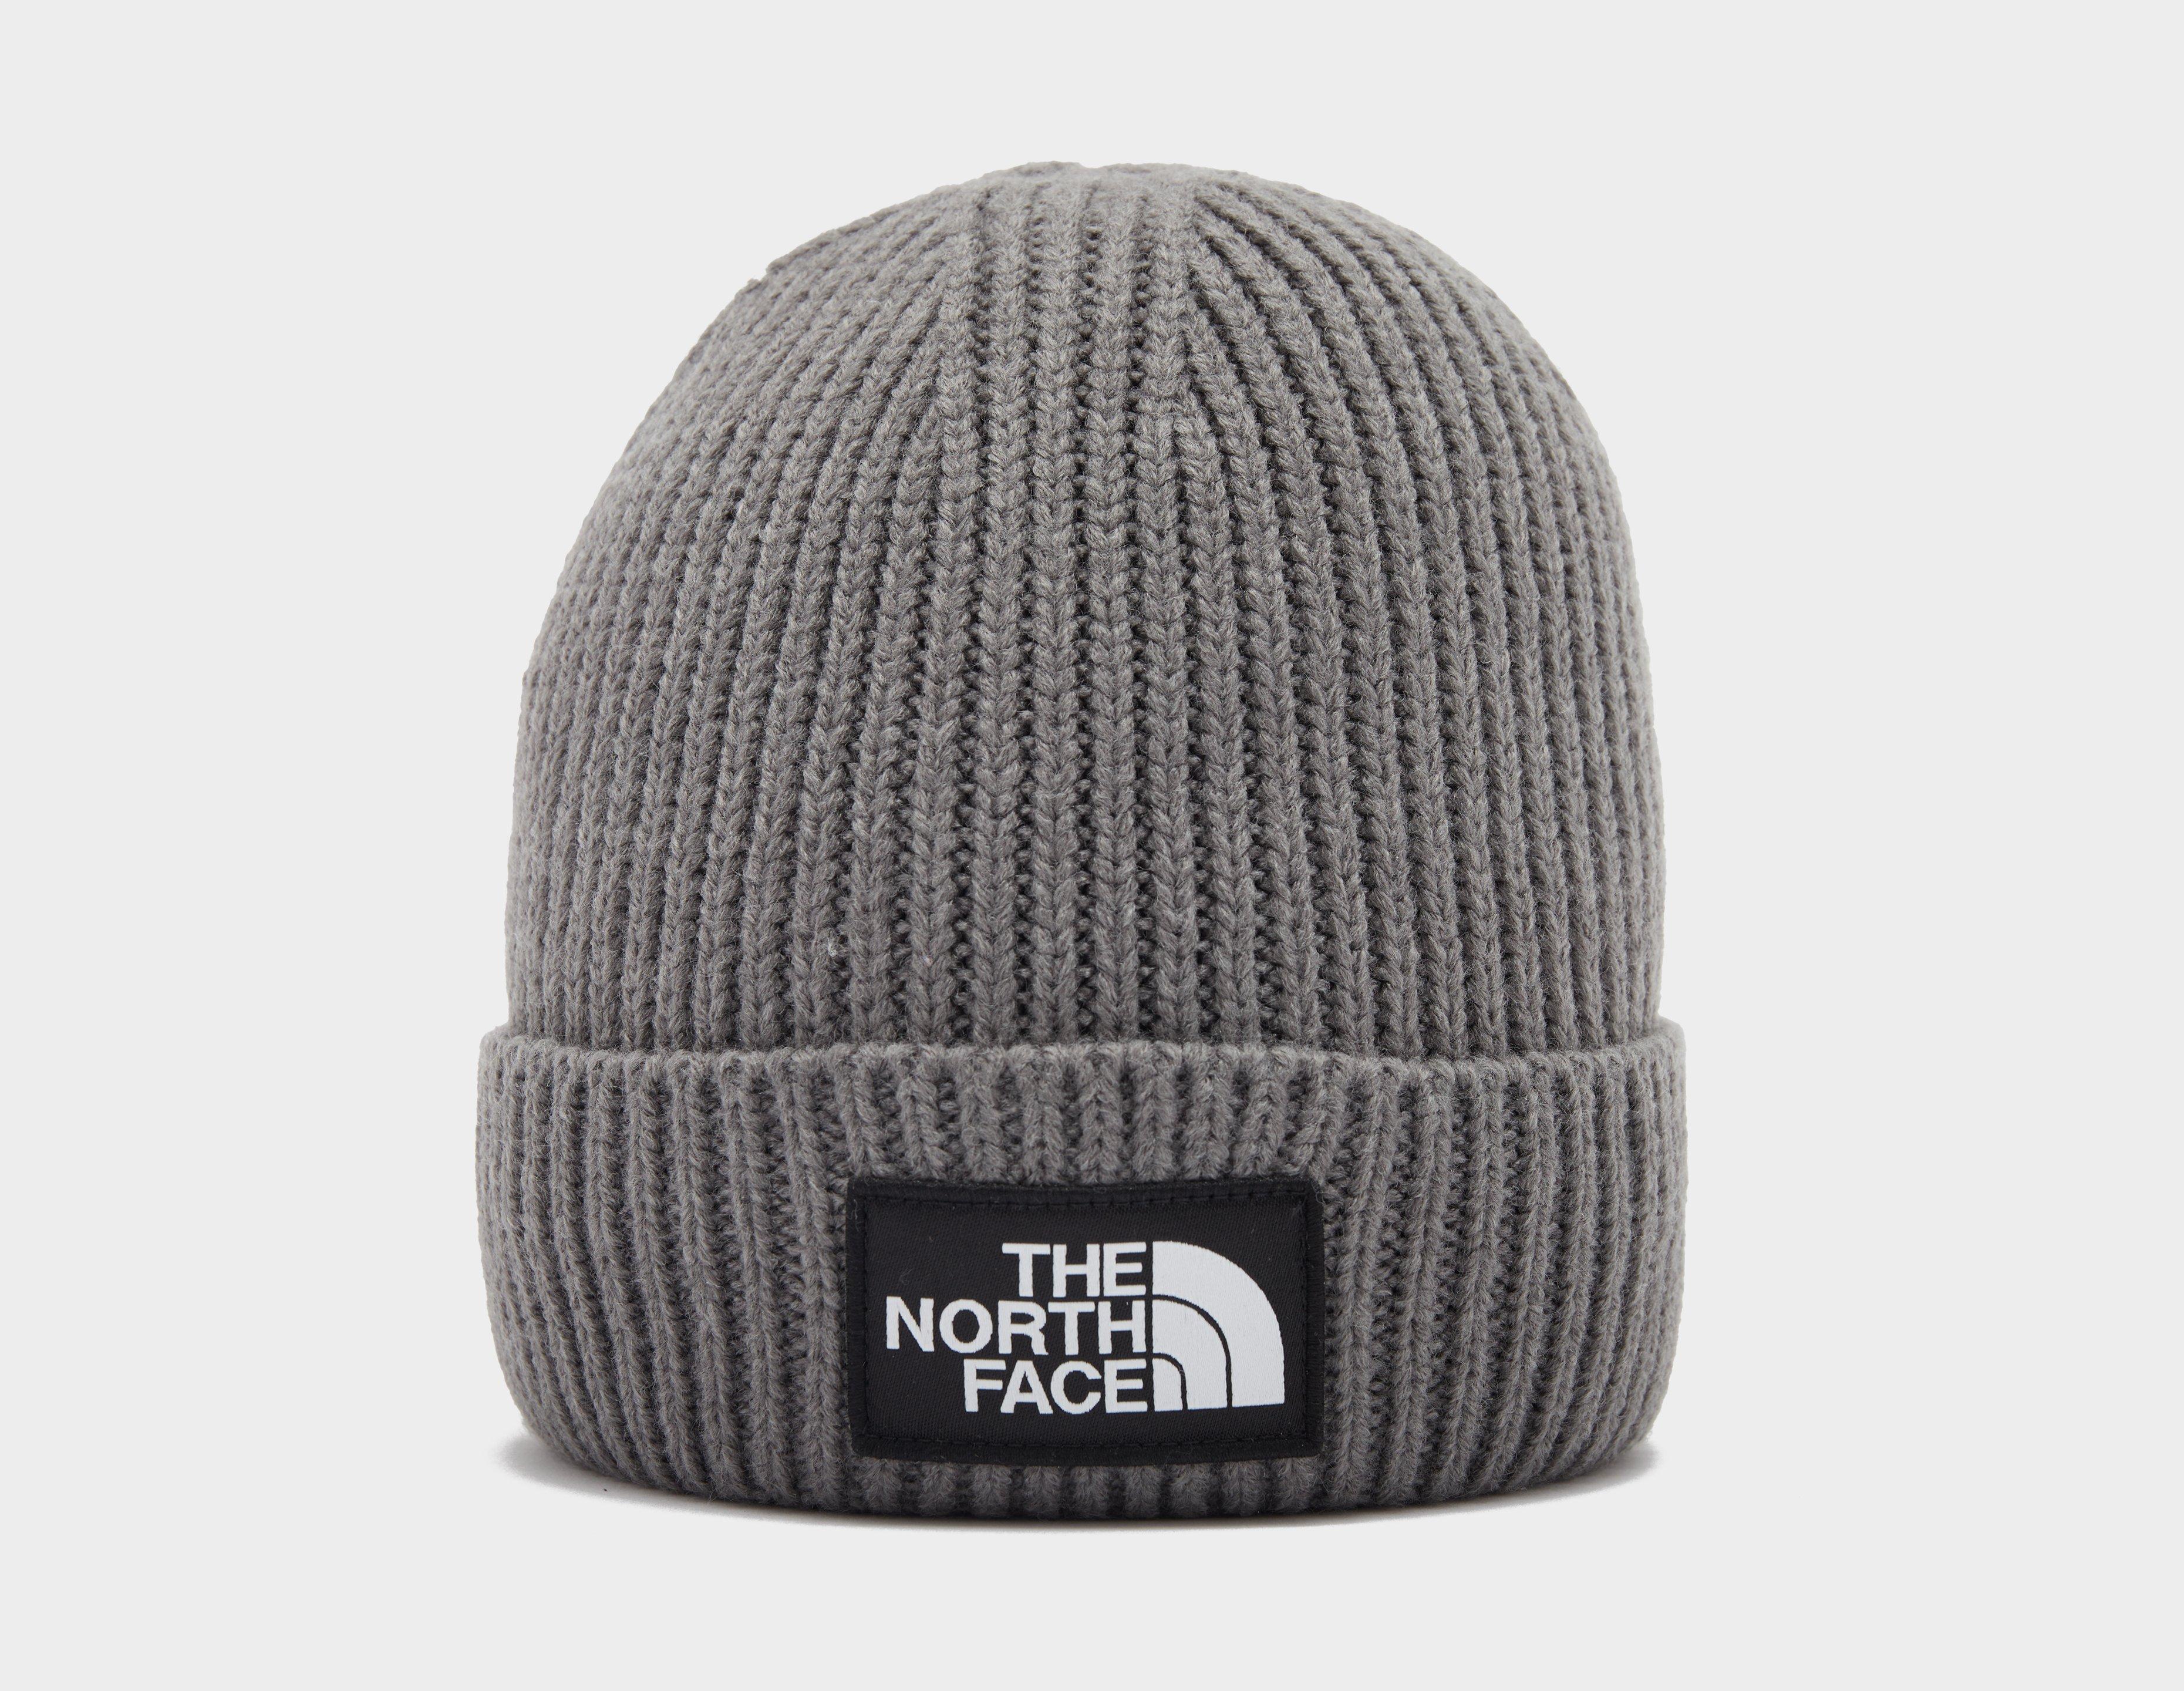 The North Face Bonnet Logo Gris- Size? France